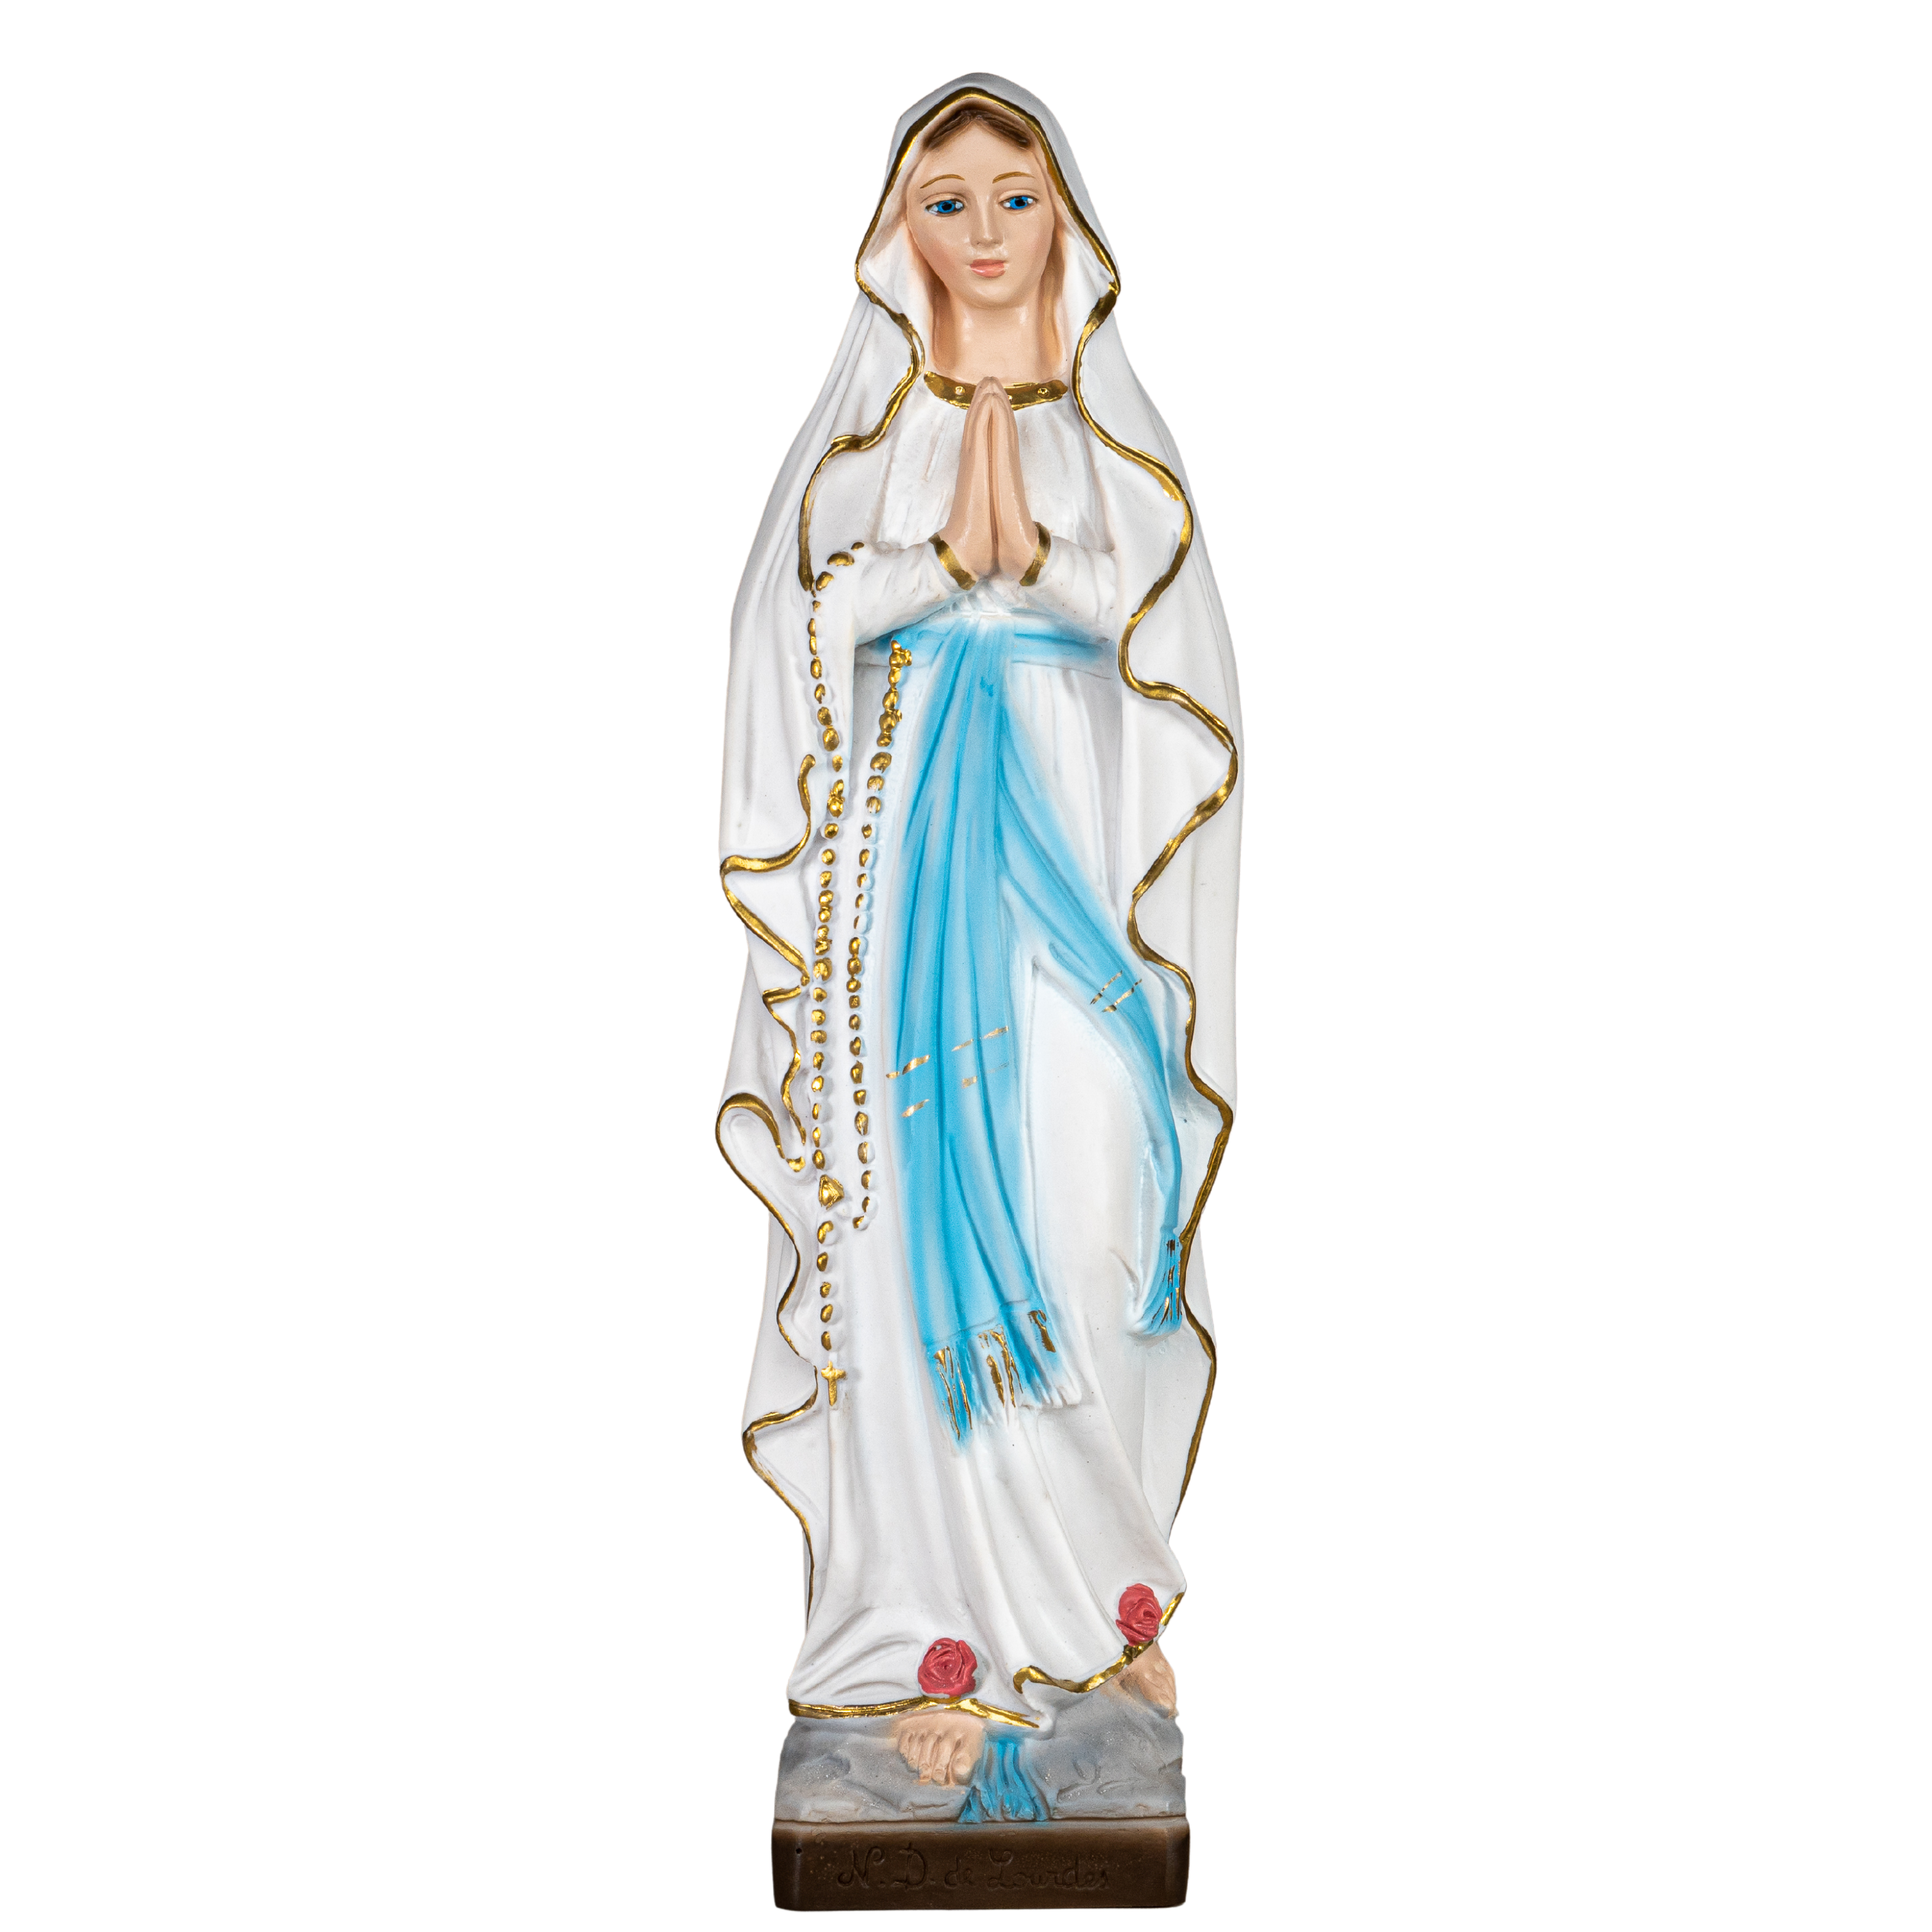 Our Lady of Lourdes / Nuestra Senora de Lourdes